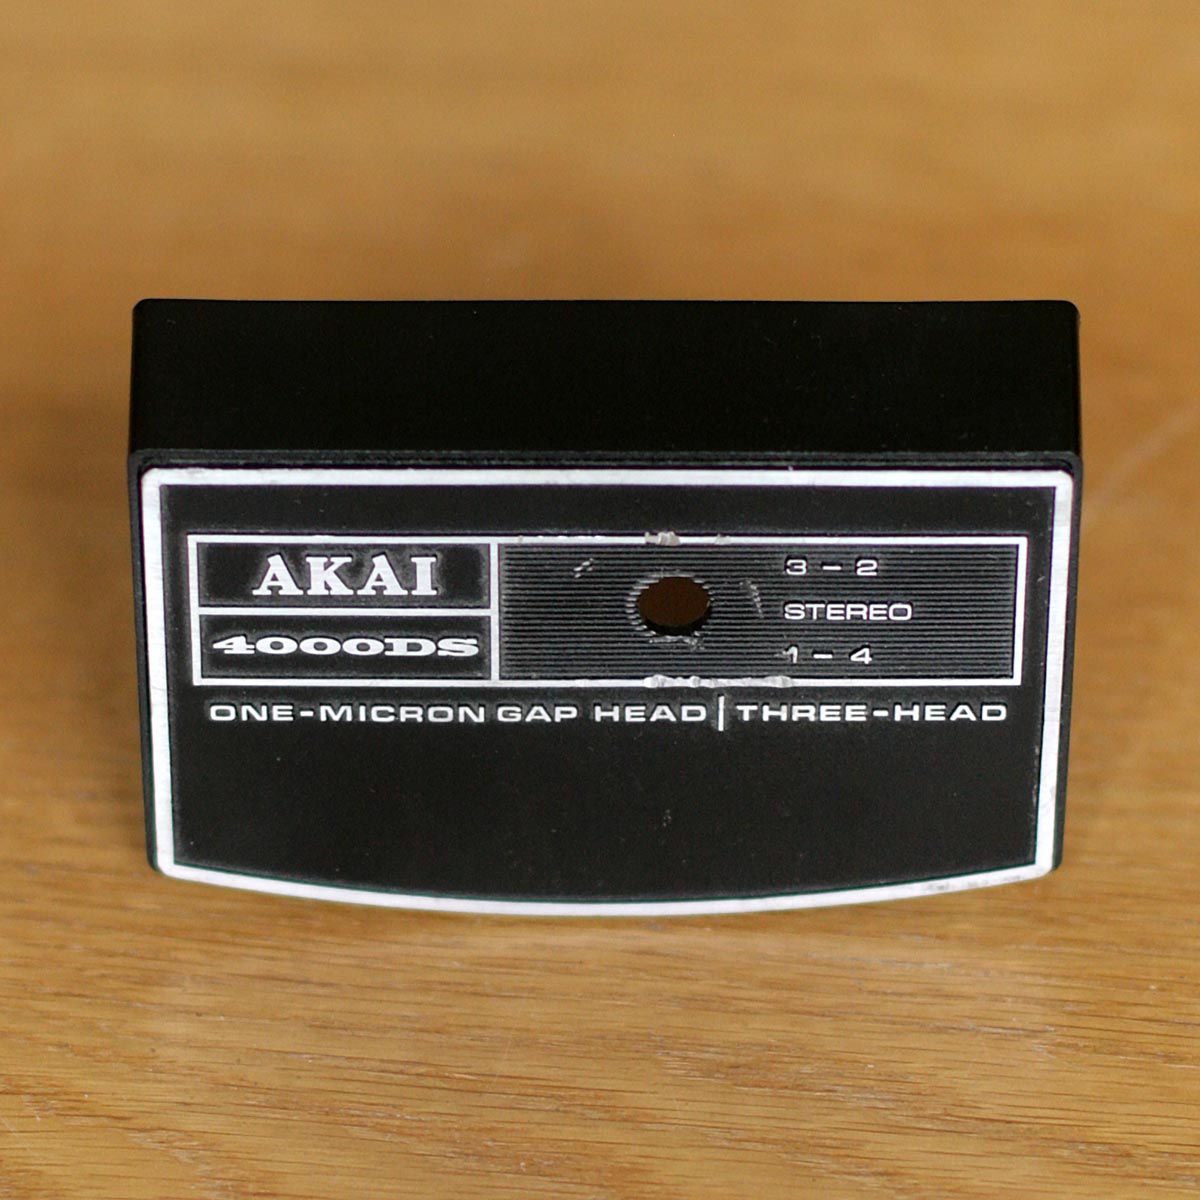 Akai • Magnétophone 4000DS • Tape deck • Cache pour têtes d'enregistrement/lecture • Headcover • Tonkopfabdeckung • Akai SC481037 • Spare part